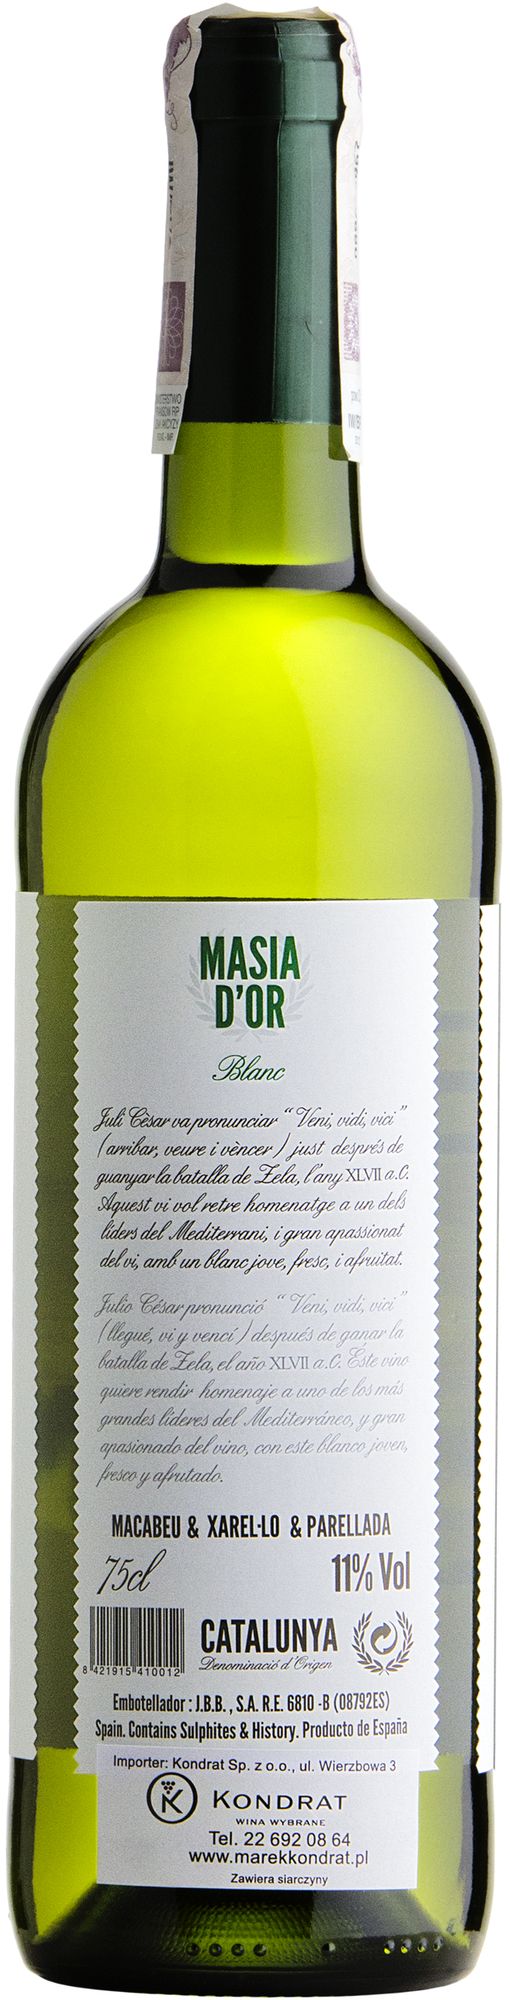 Wino Martí Serdà Veni Vidi Vinum White Catalunya DO